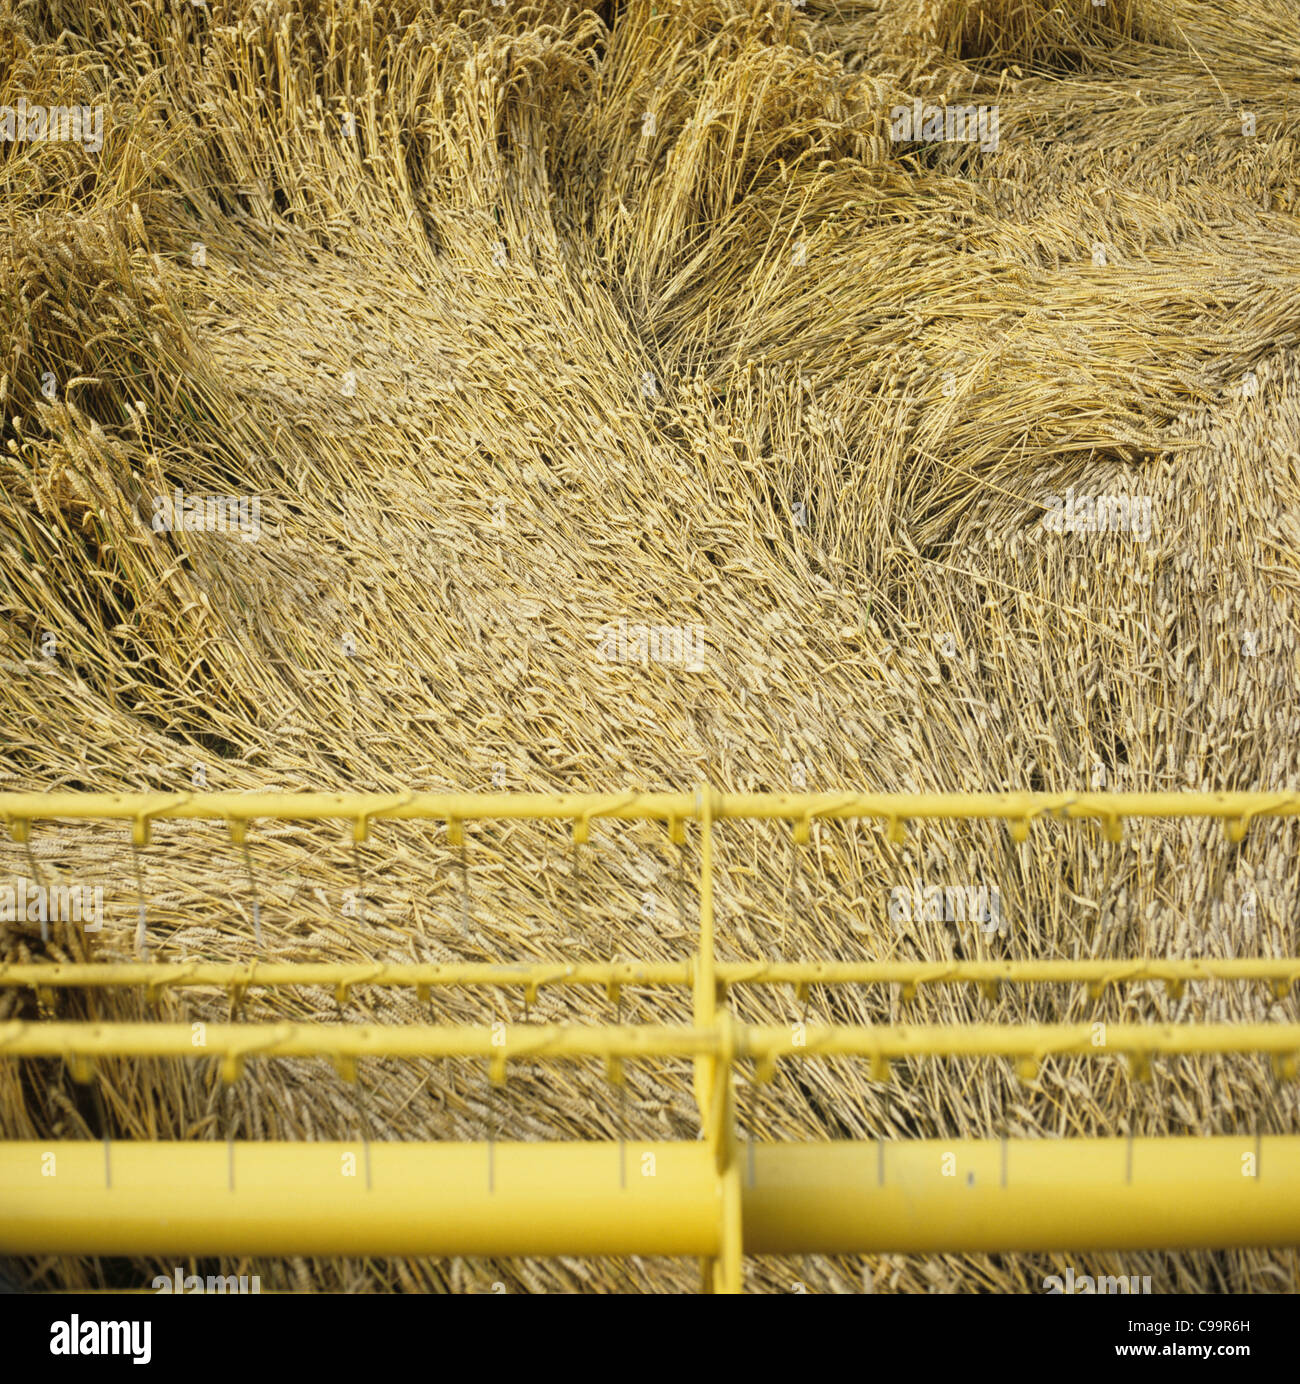 La testata della mietitrebbia tenta di raccolta presentate gravemente il raccolto di grano Foto Stock